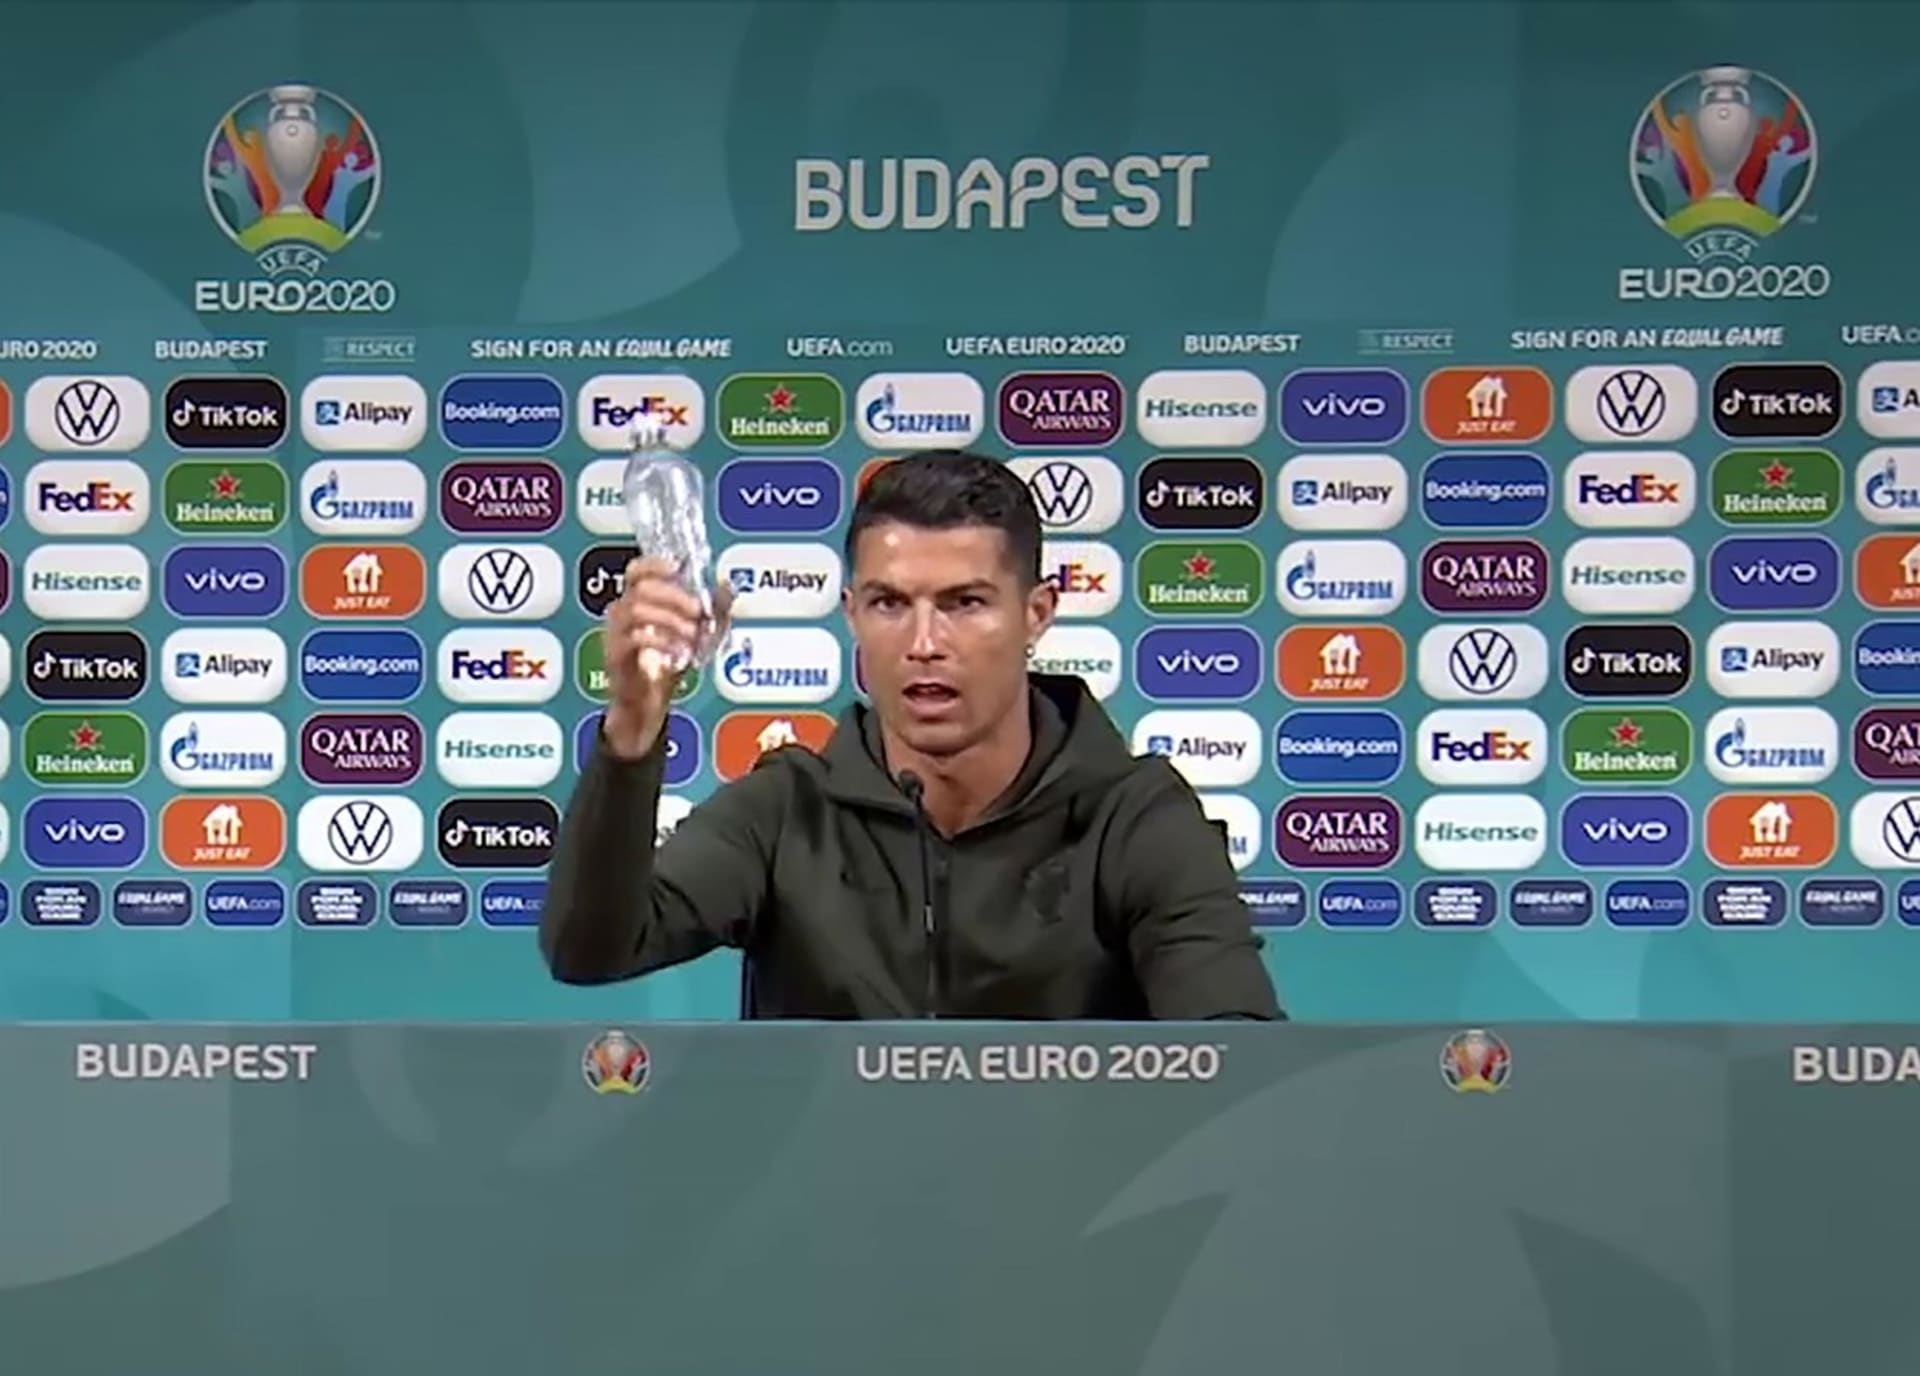 Cristiano Ronaldo strhl lavinu odstraňování výrobků sponzorů Eura ze záběru kamer při tiskových konferencích.